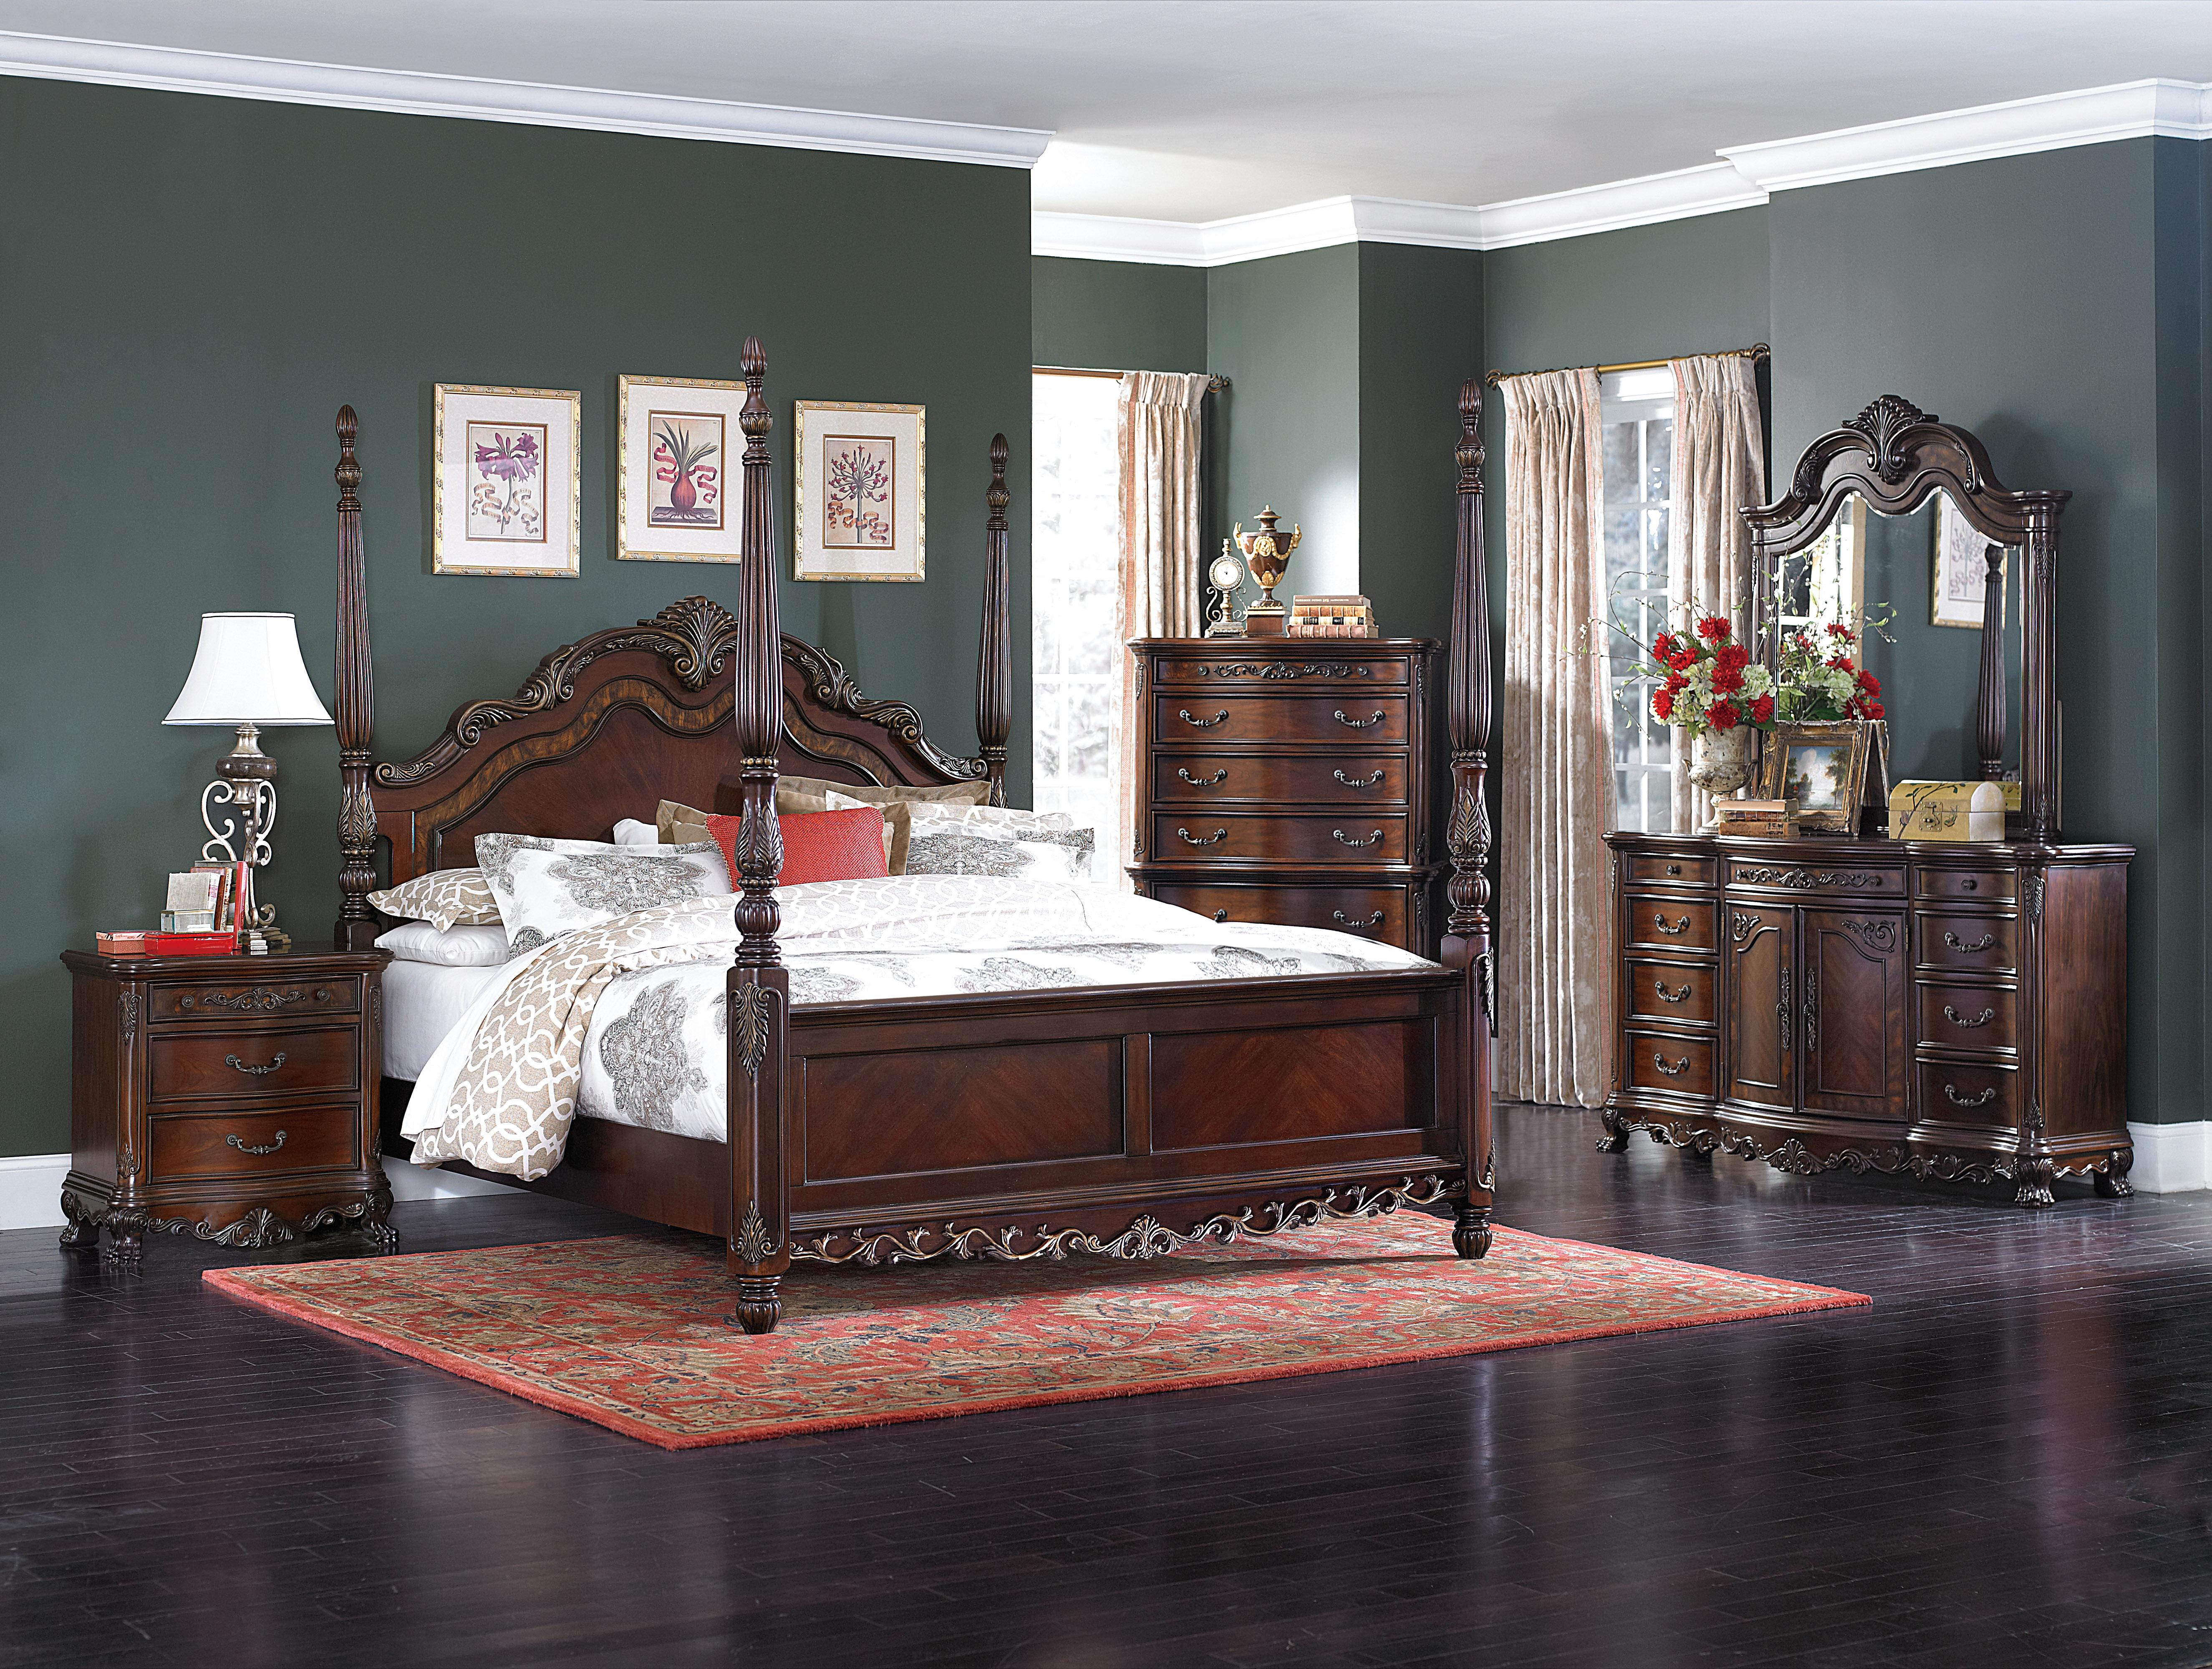 

    
Traditional Cherry Wood Queen Bedroom Set 6pcs Homelegance 2243-1* Deryn Park
